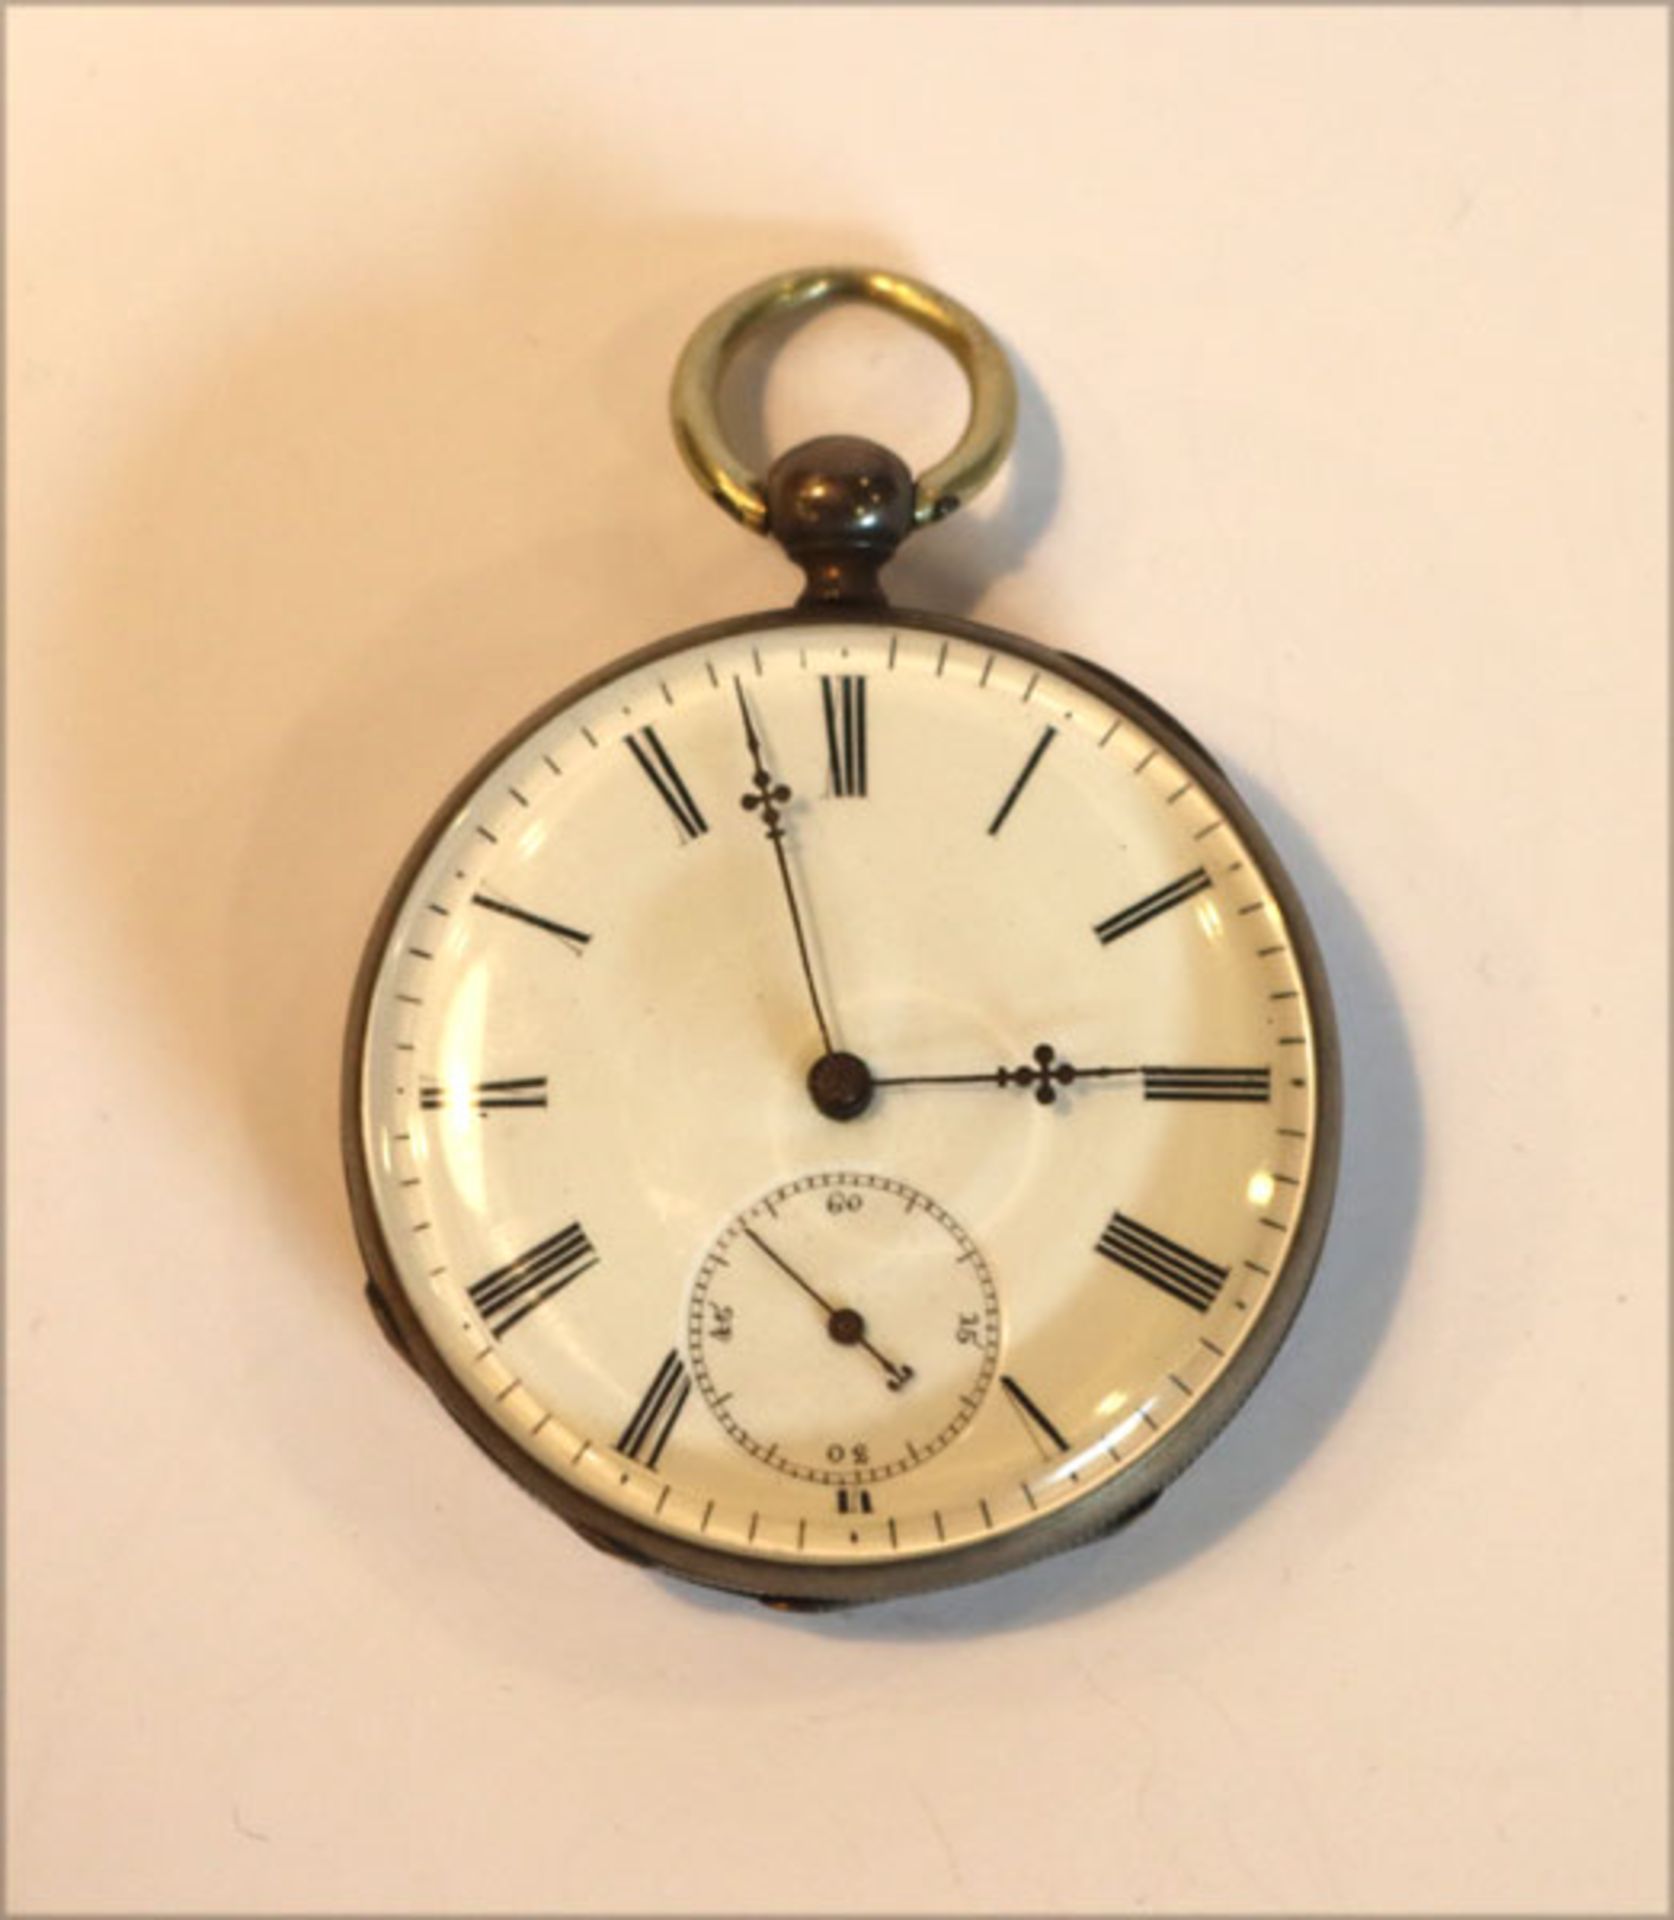 Silber Schlüssel Taschenuhr um 1900, Schlüssel fehlt, wohl intakt, D 4,5 cm